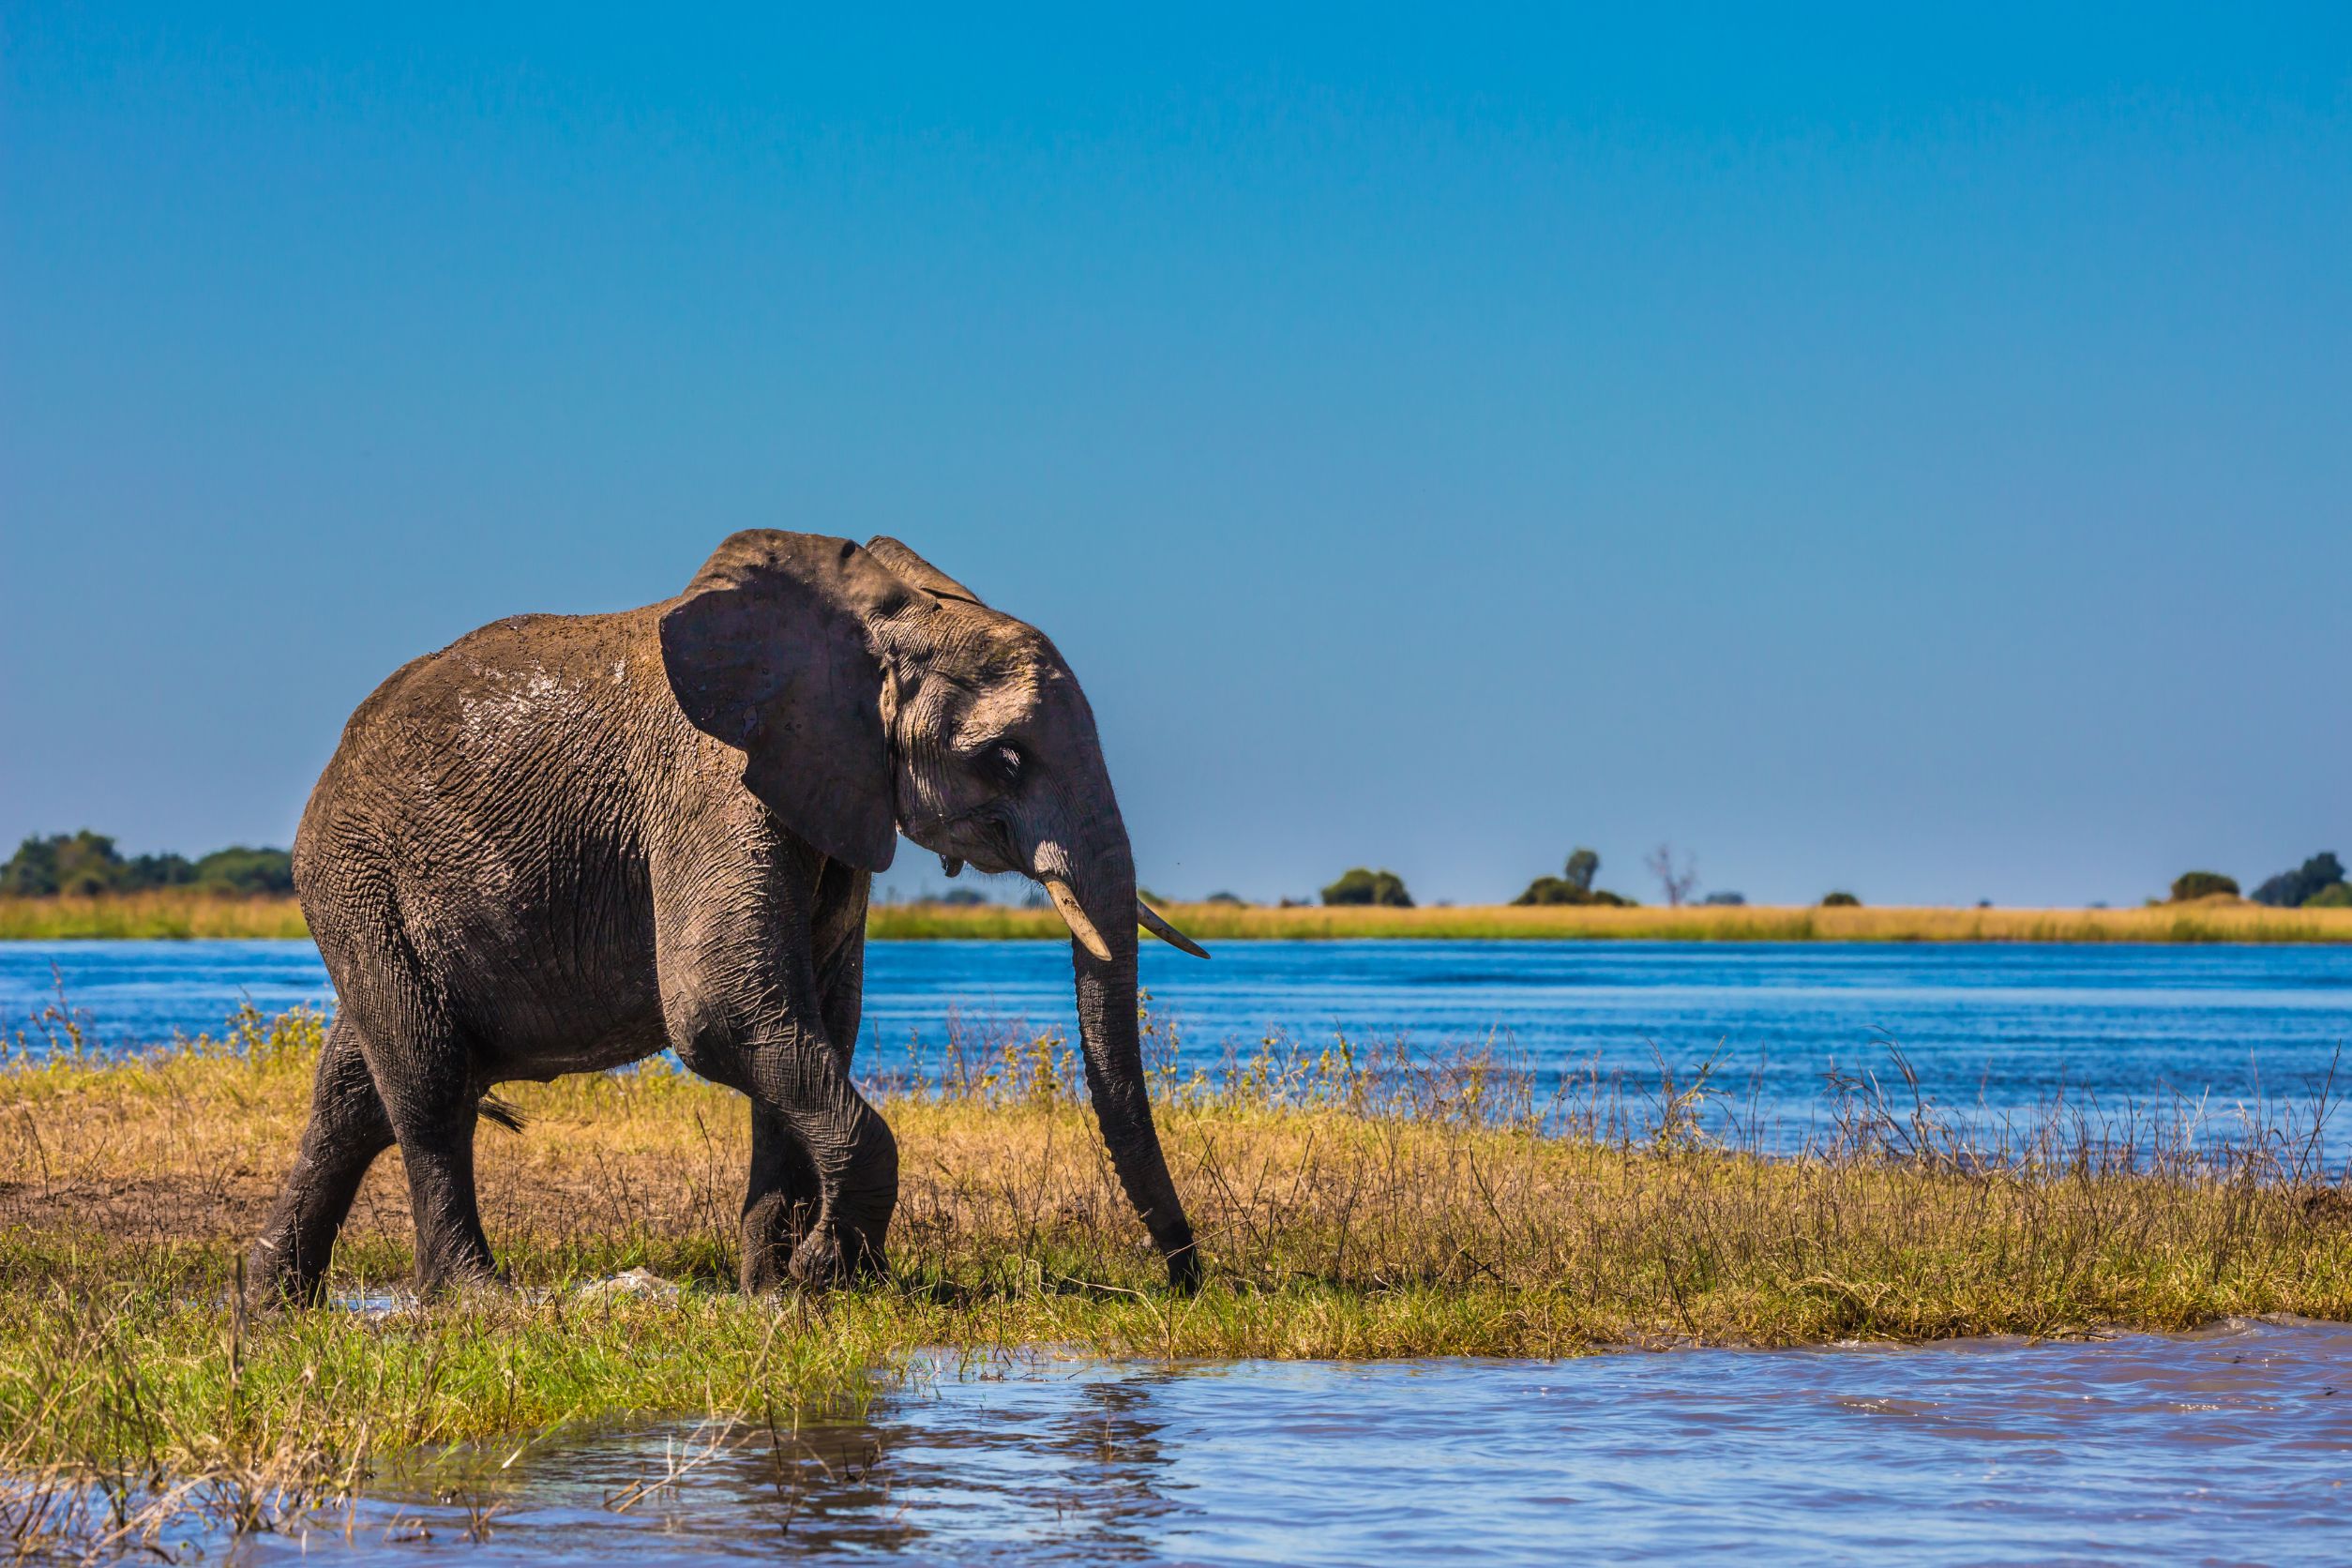 Safari in the Okavango Delta, Botswana